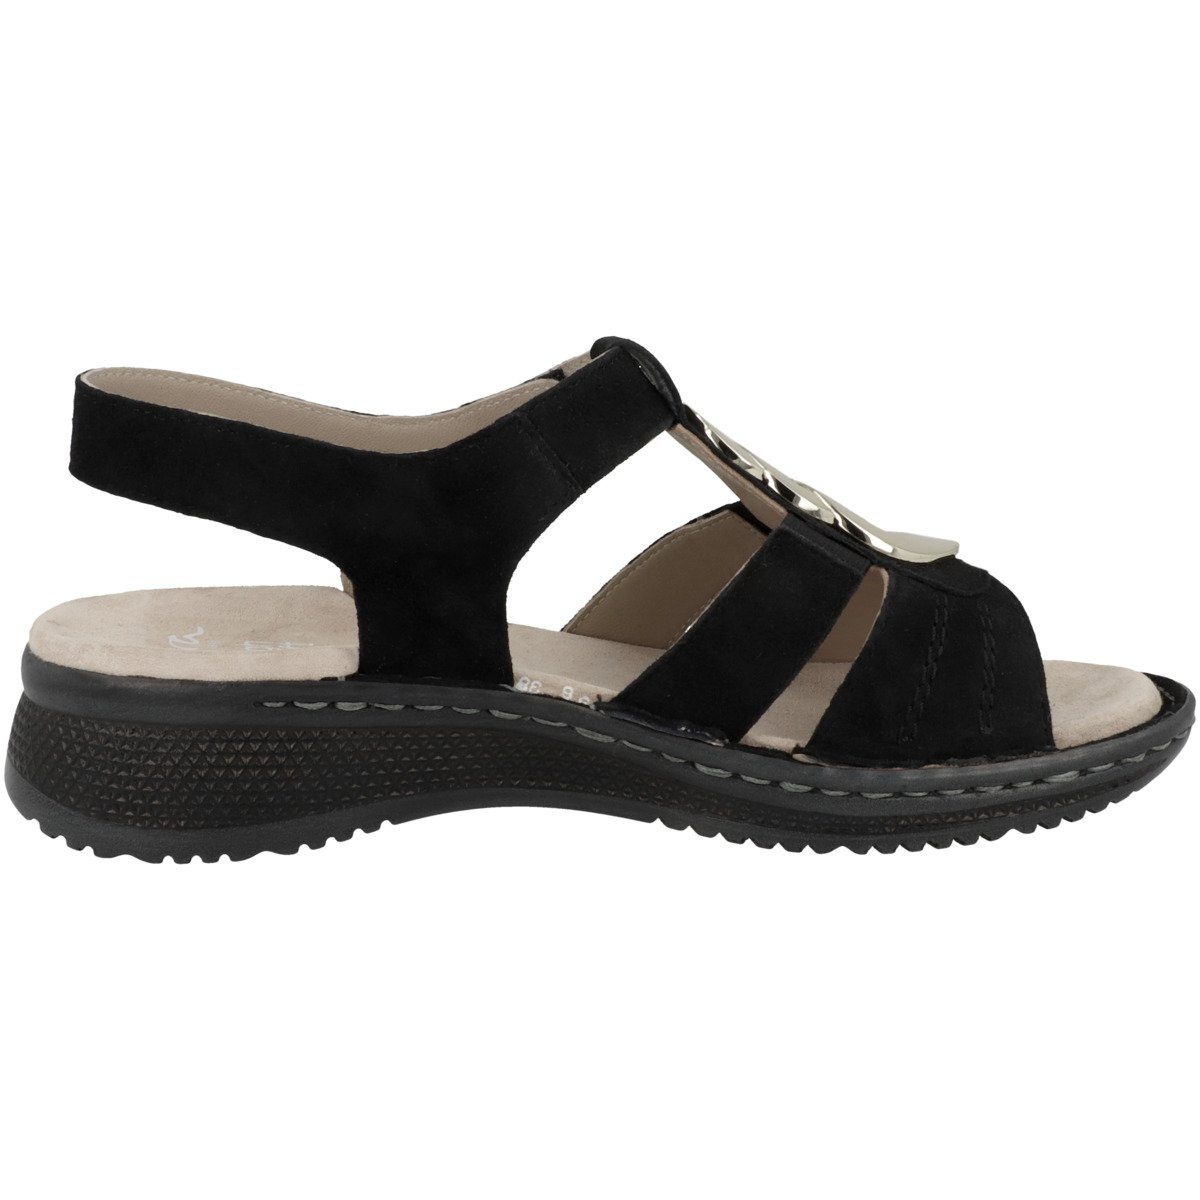 Damen Sandale Ara schwarz 12-29011